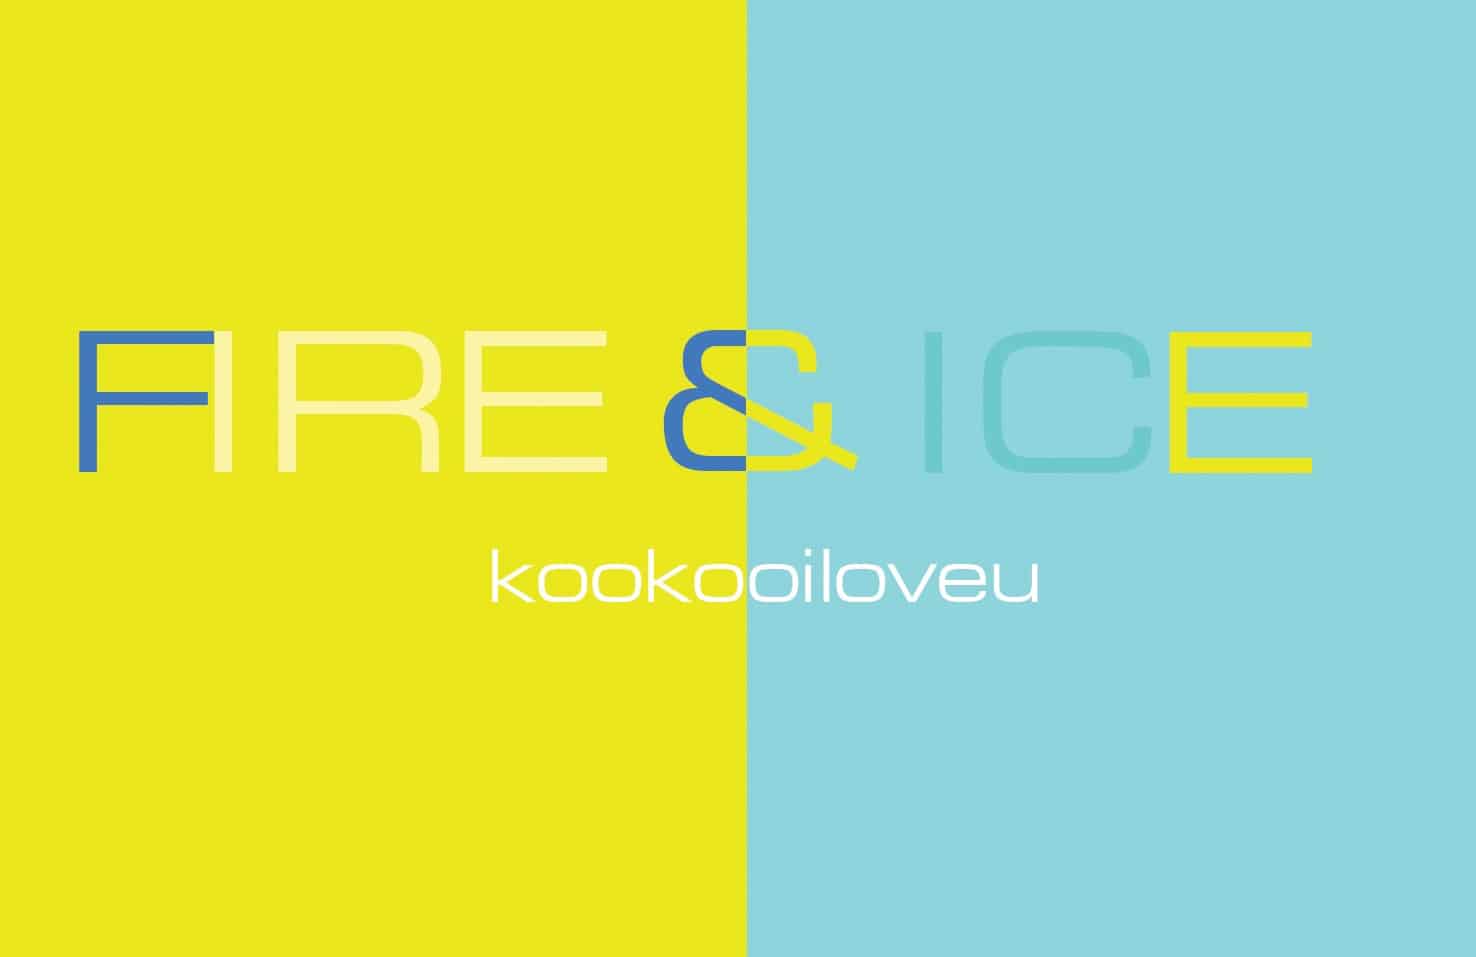 Kookooiloveu fire and ice